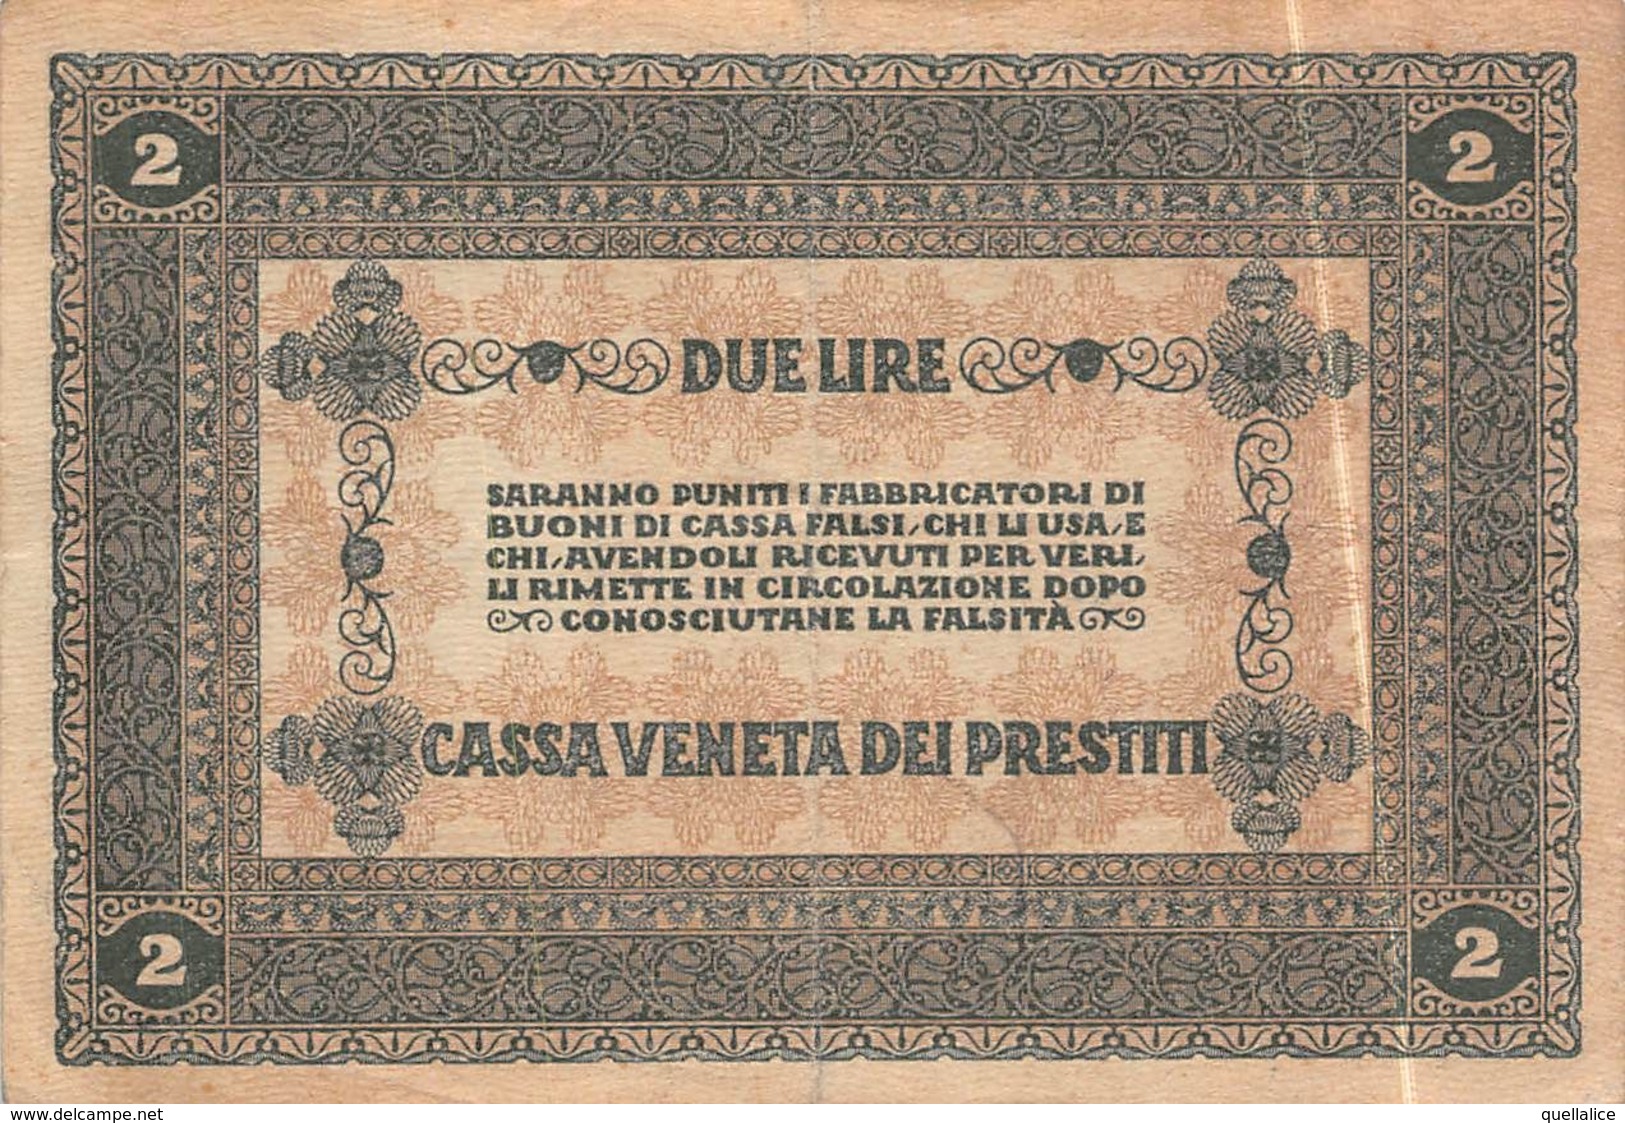 01616 "CASSA VENETA DEI PRESTITI - 2 GENNAIO 1918 - BUONO CASSA A CORSO LEGALE DA DUE LIRE" ORIGINALE - [10] Assegni E Miniassegni